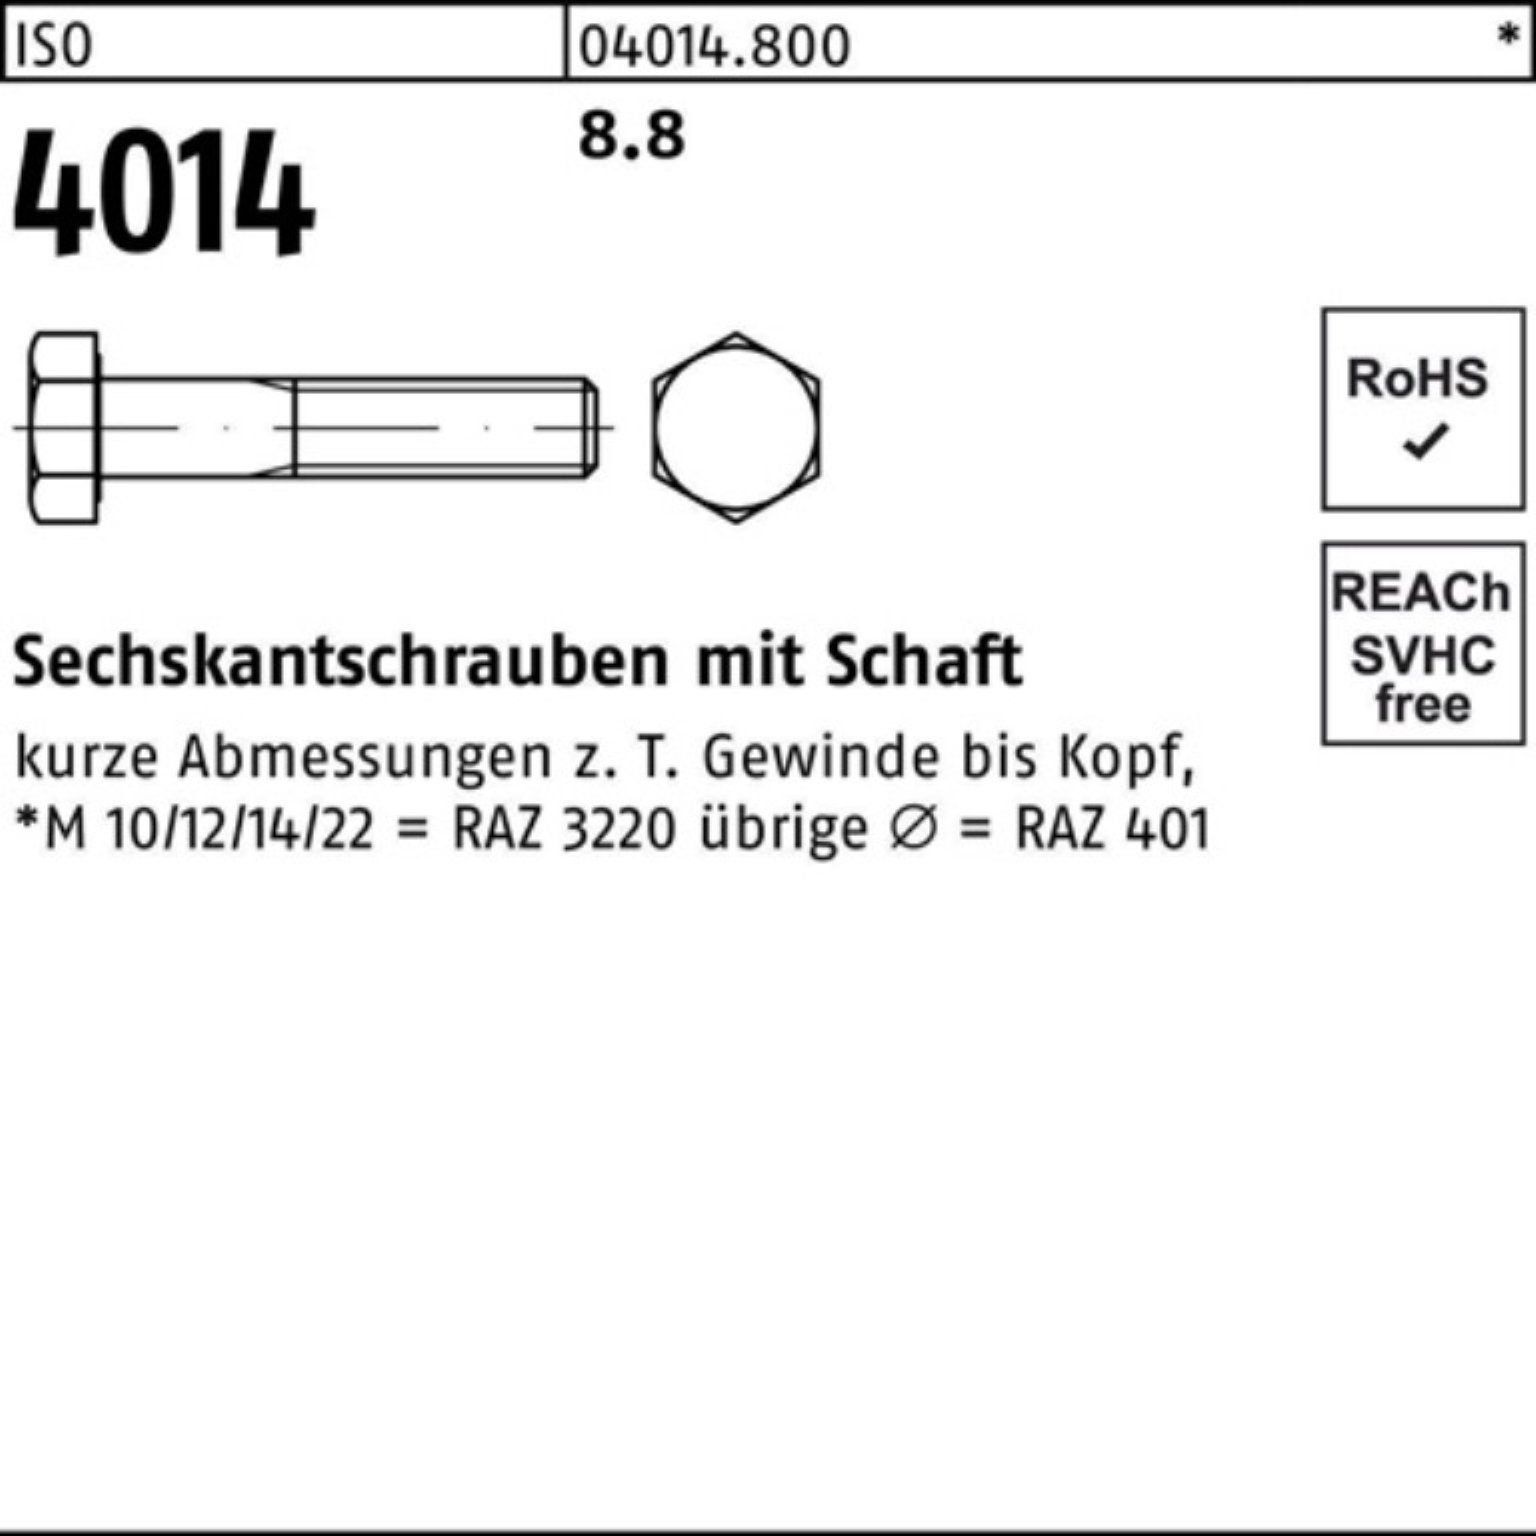 Sechskantschraube 100er ISO Sechskantschraube Bufab IS Stück M10x 4014 Pack 240 50 8.8 Schaft